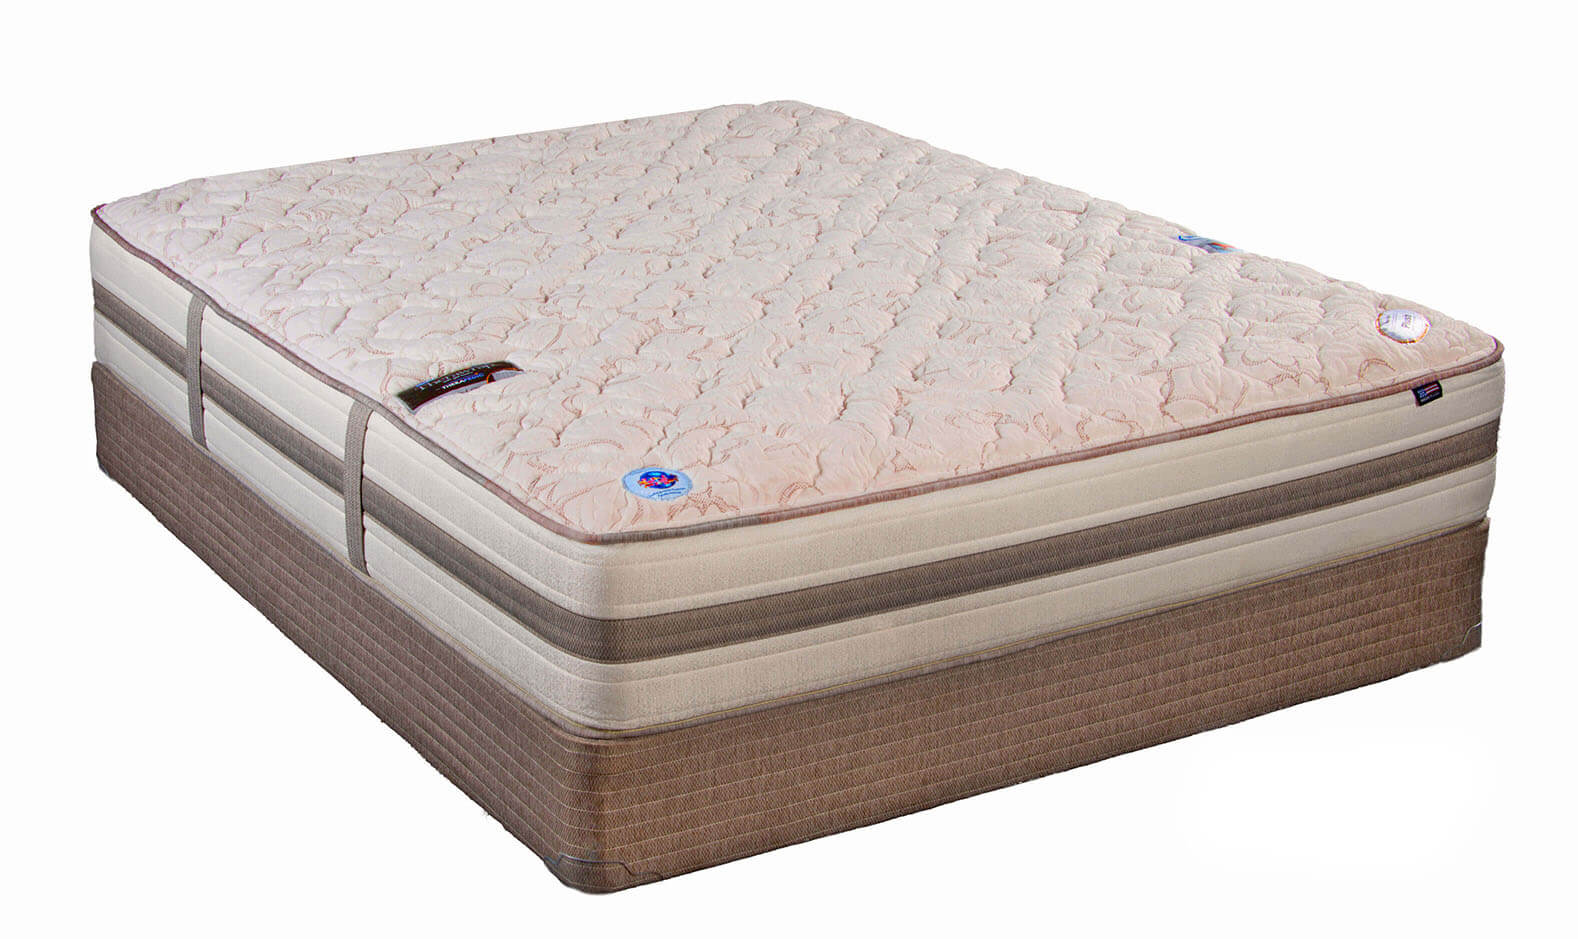 voila hybrid plush mattress